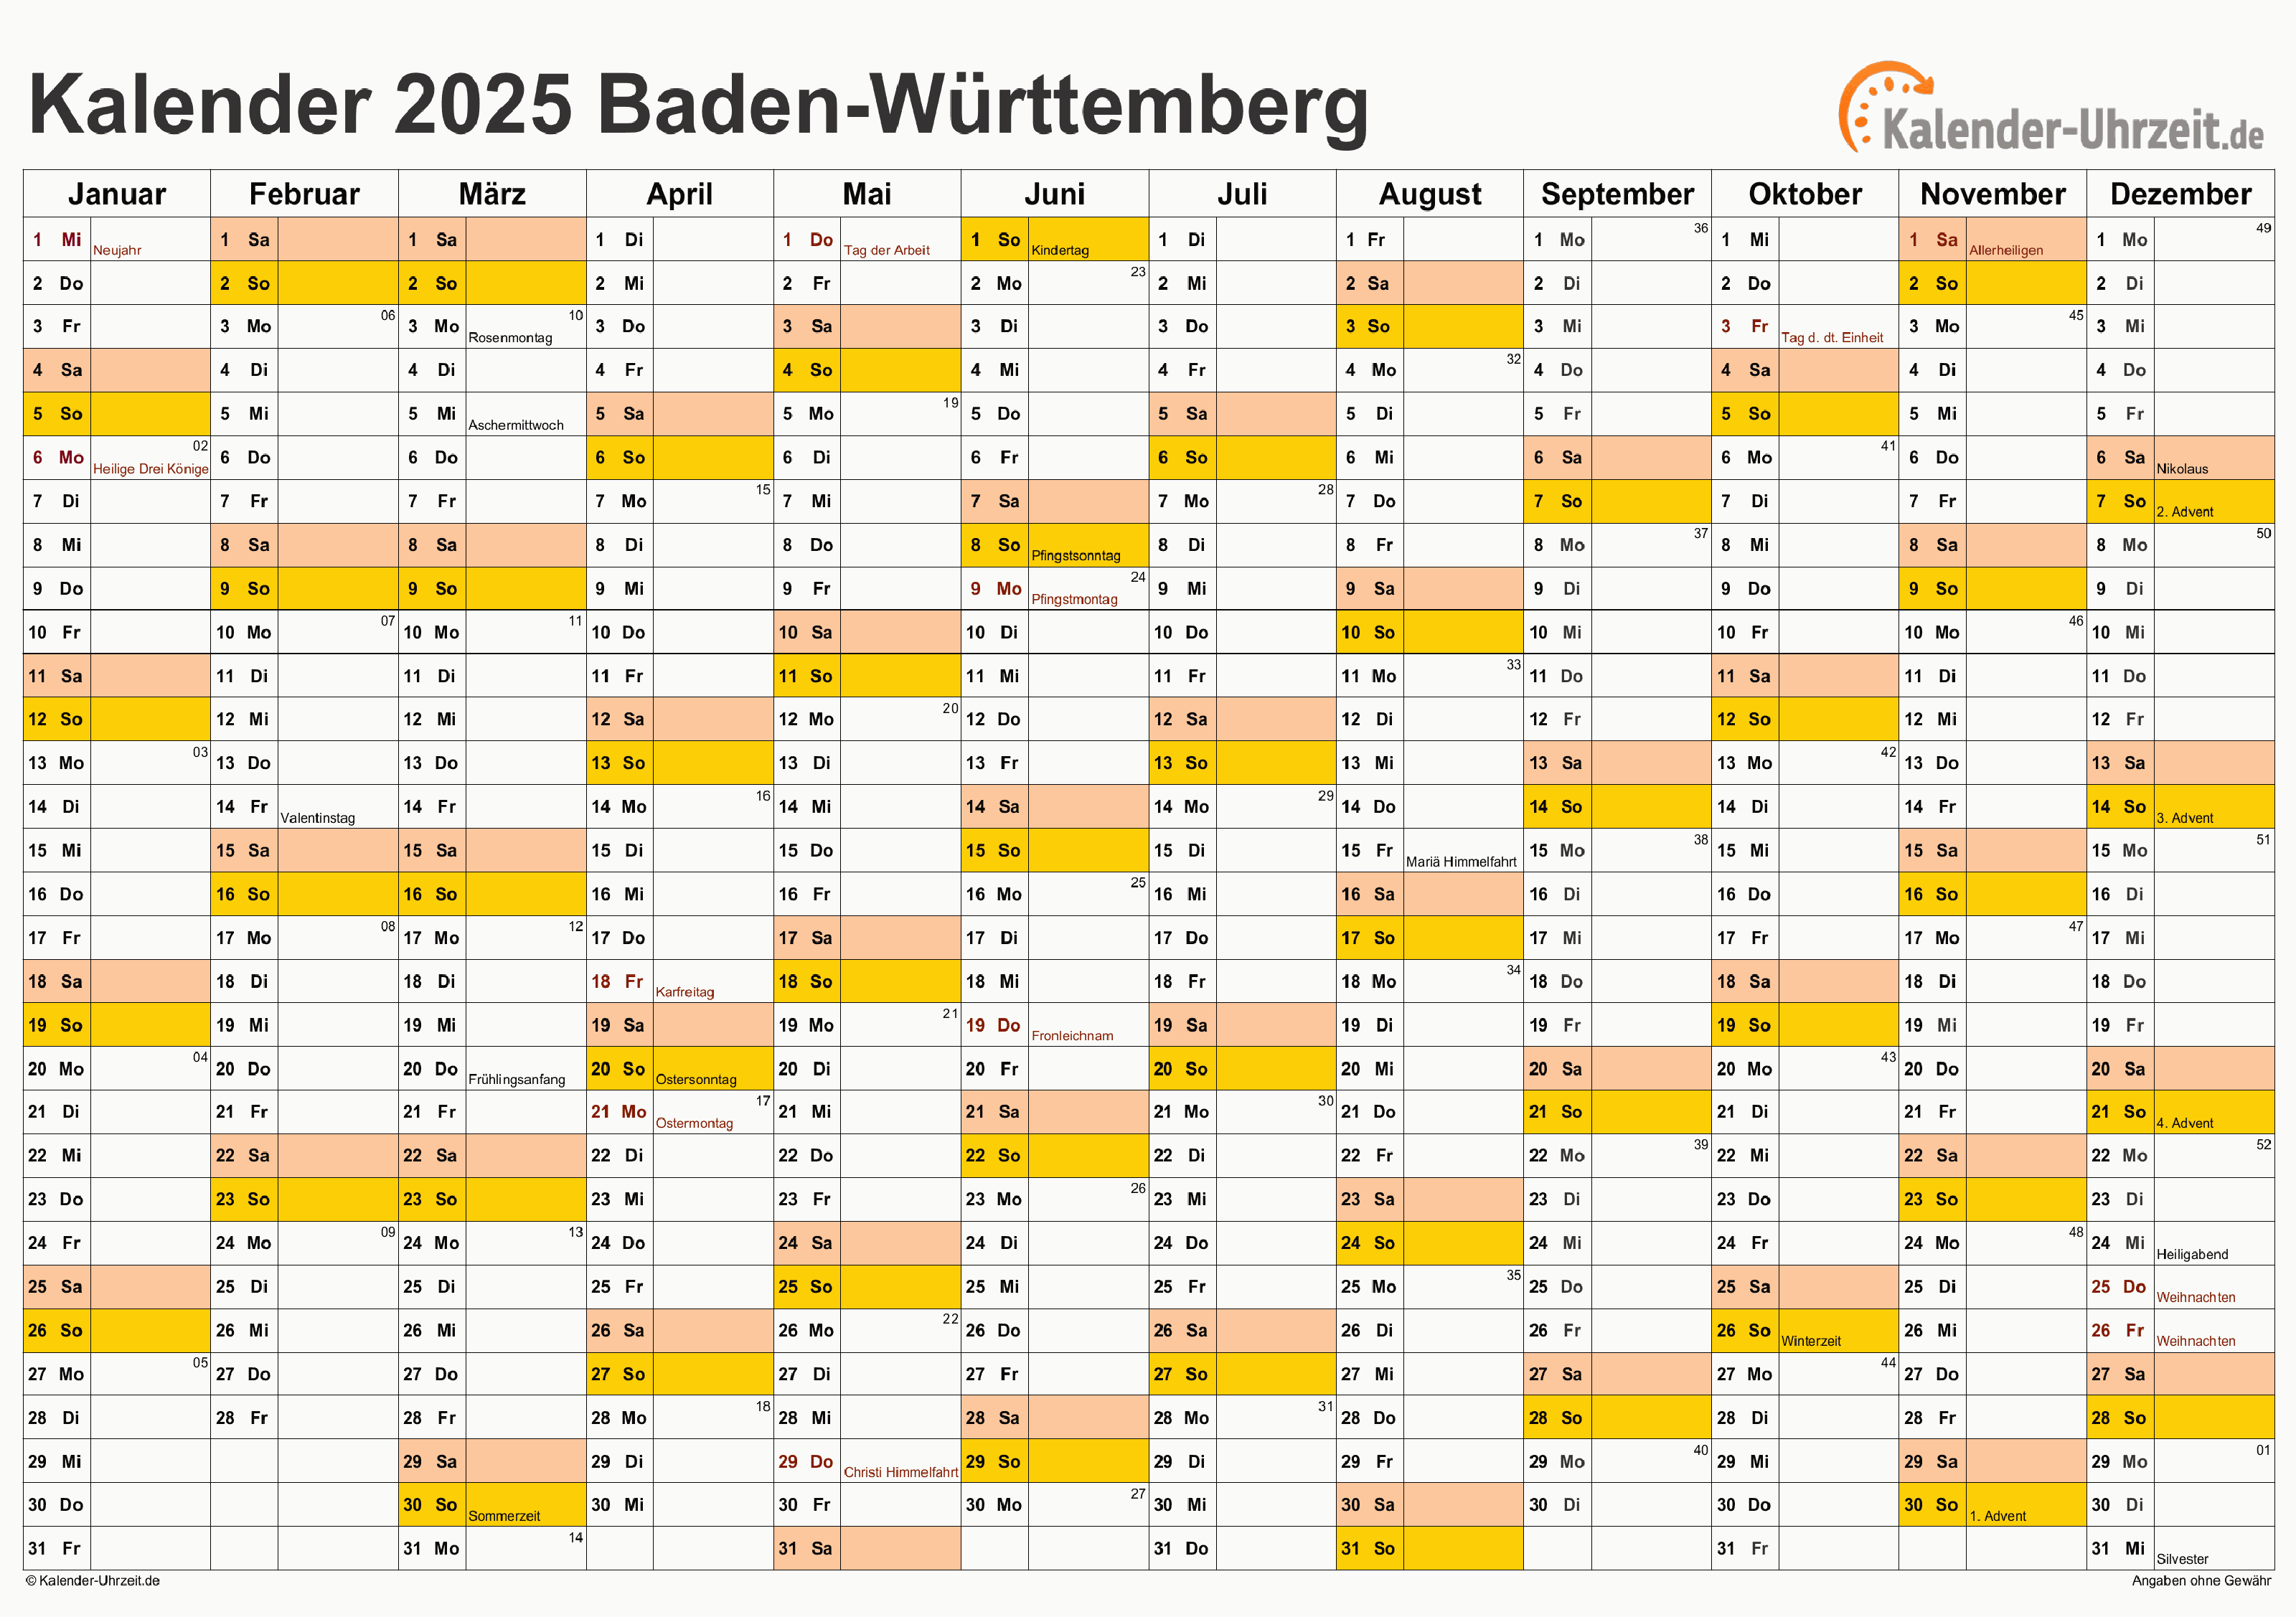 Baden-Württemberg Kalender 2025 mit Feiertagen - quer-einseitig